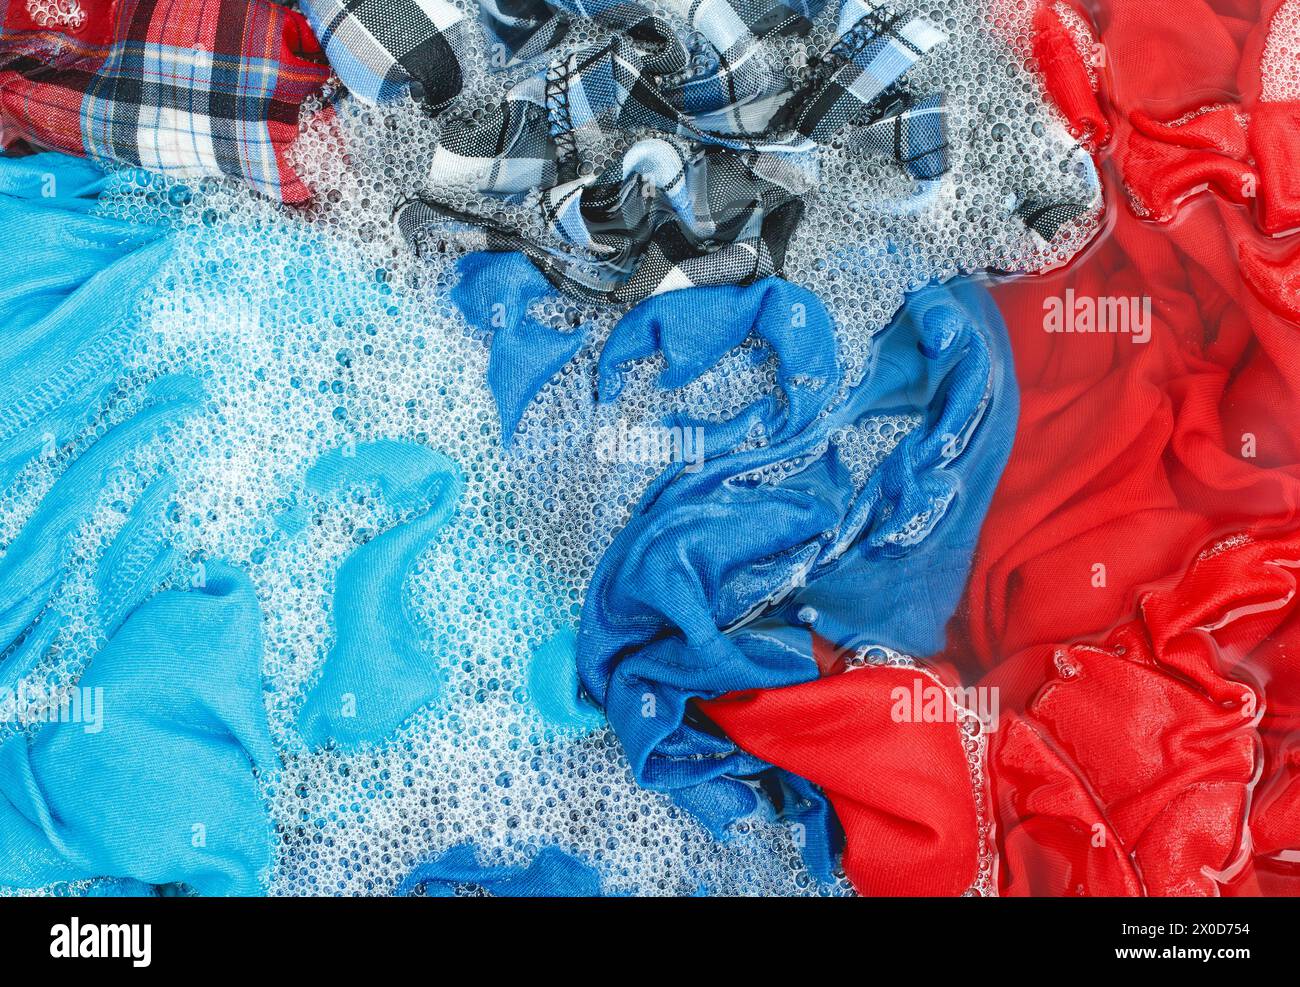 Lavare gli indumenti o lavare con acqua saponata Foto Stock